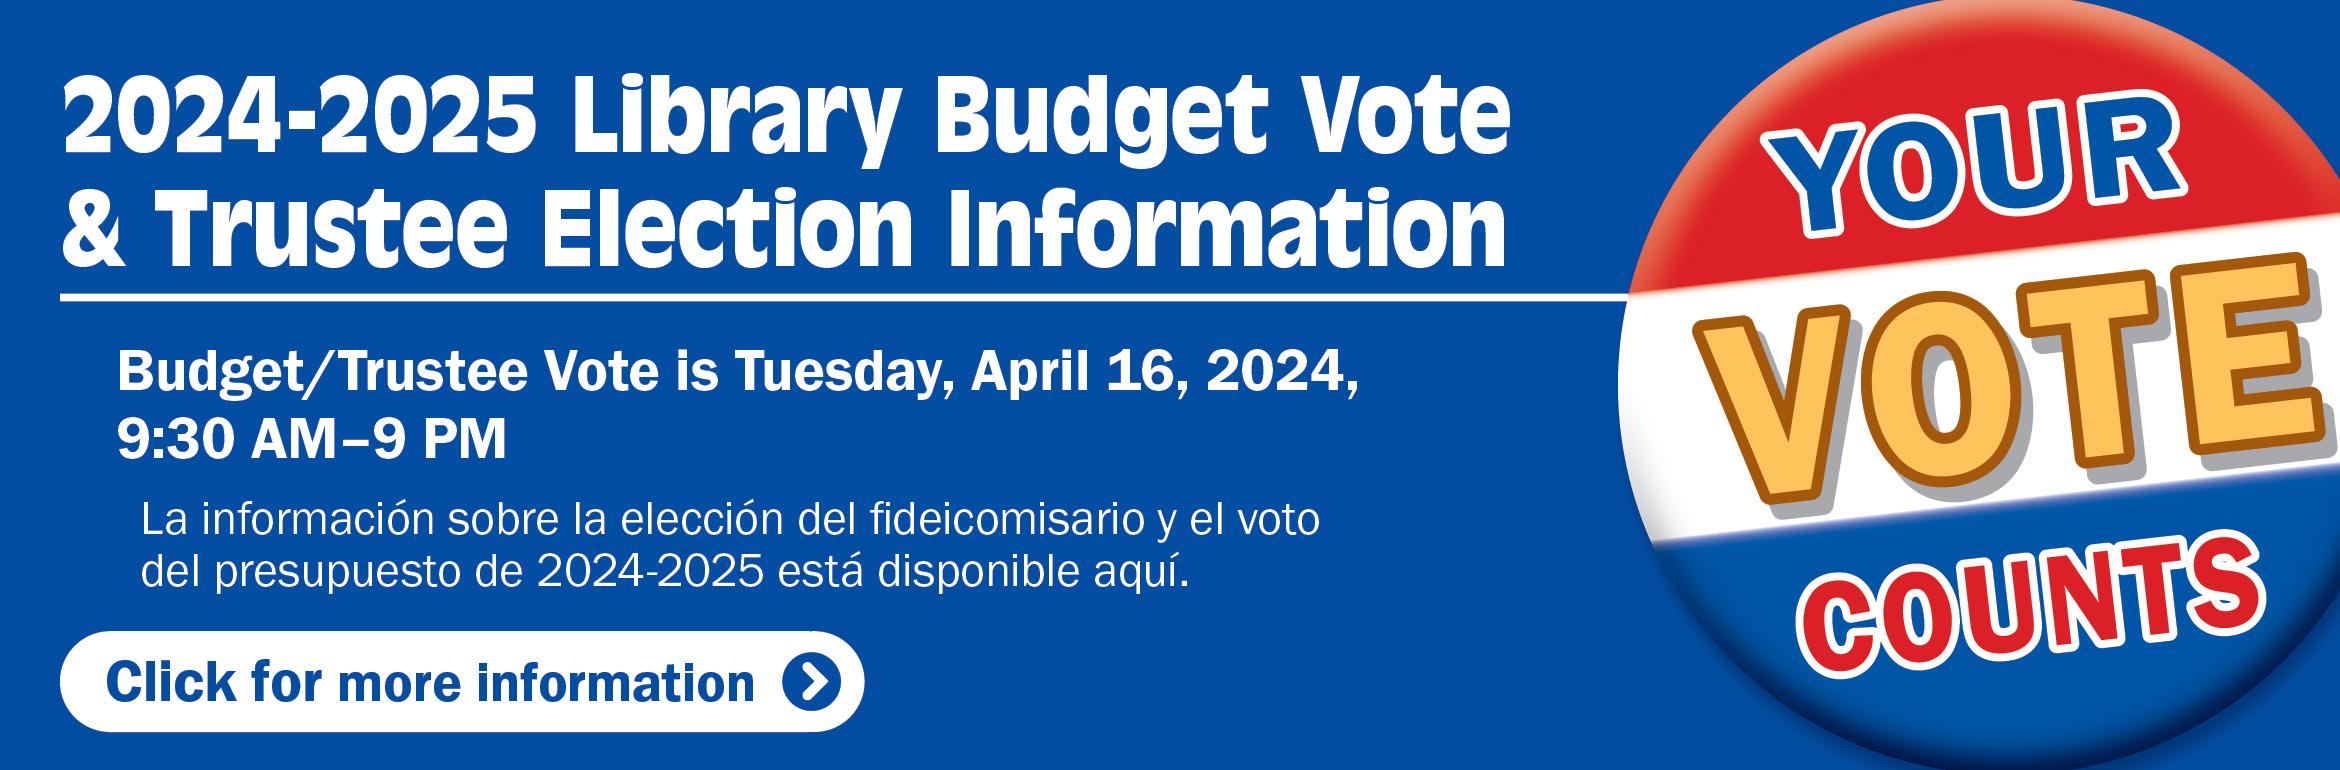 2024-2025 Library Budget Vote & Trustee Election Information. Budget/Trustee Vote is Tuesday, April 16, 2024, 9:30 AM–9 PM. La información sobre la elección del fideicomisario y el voto del presupuesto de 2023-2024 está disponible aquí. Your vote counts. Click for more information.